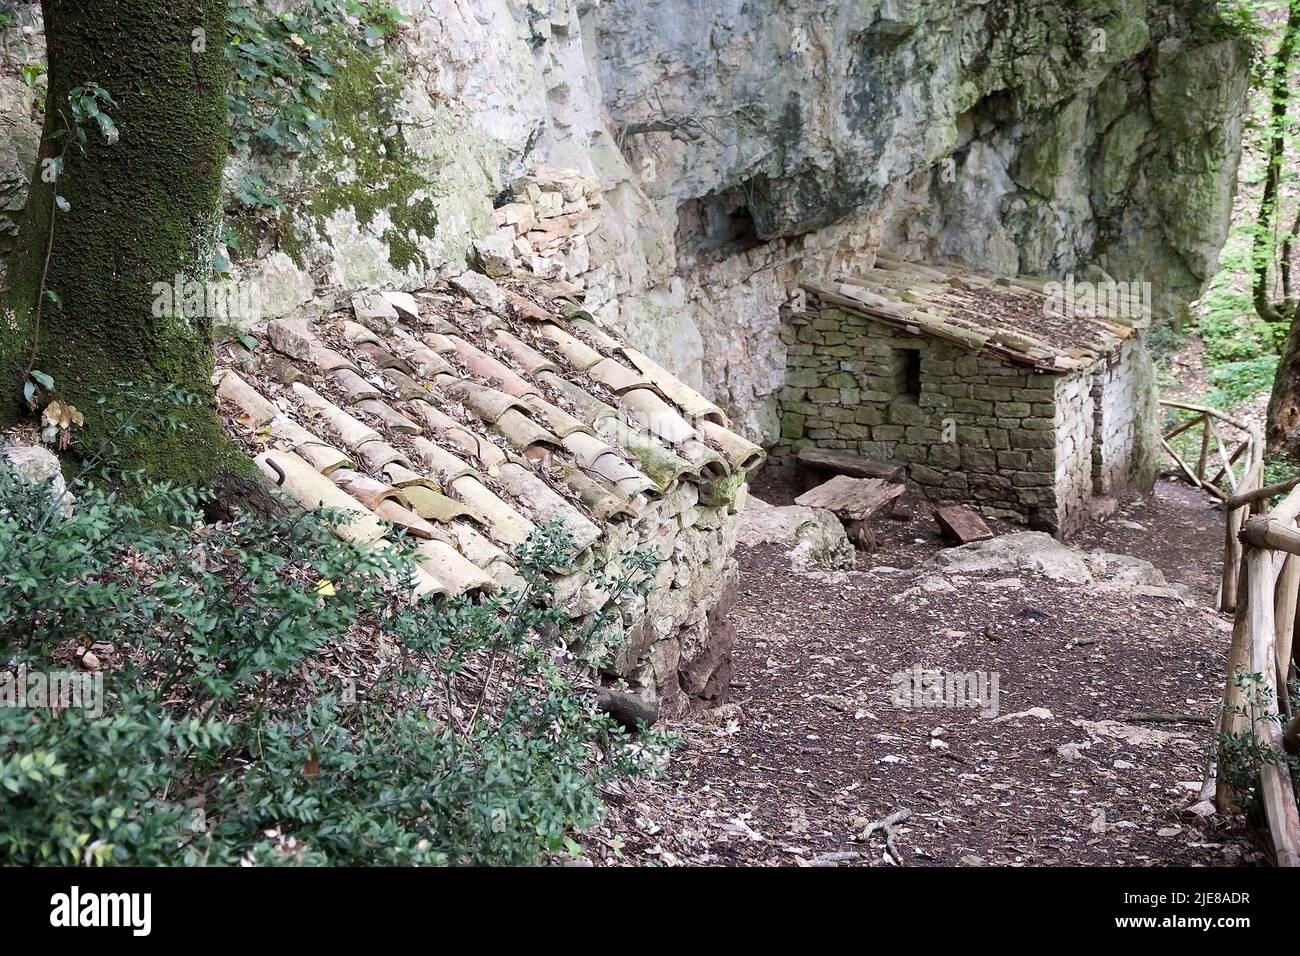 Grotte isolate nelle vicinanze dell'Eremo delle Carceri, Monte Subasio, Umbria, Italia. L'Eremo delle Carceri è un piccolo eremo in una ripida gola boschiva A. Foto Stock